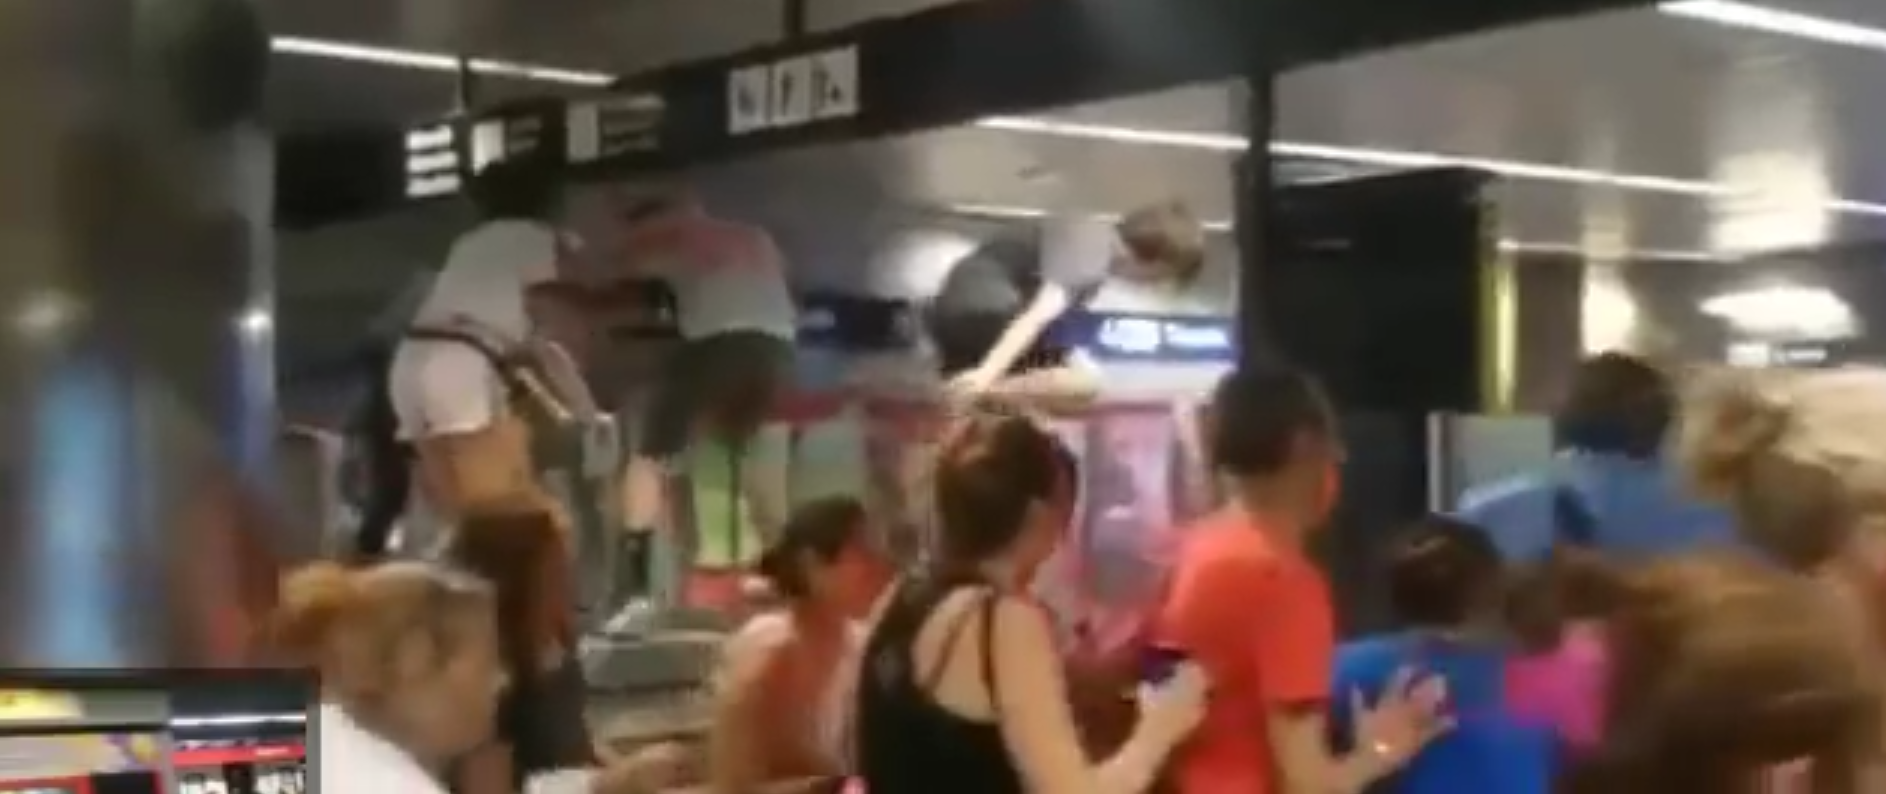 Vídeo: Pánico en el metro de Barcelona al confundir unos gritos por un atentado